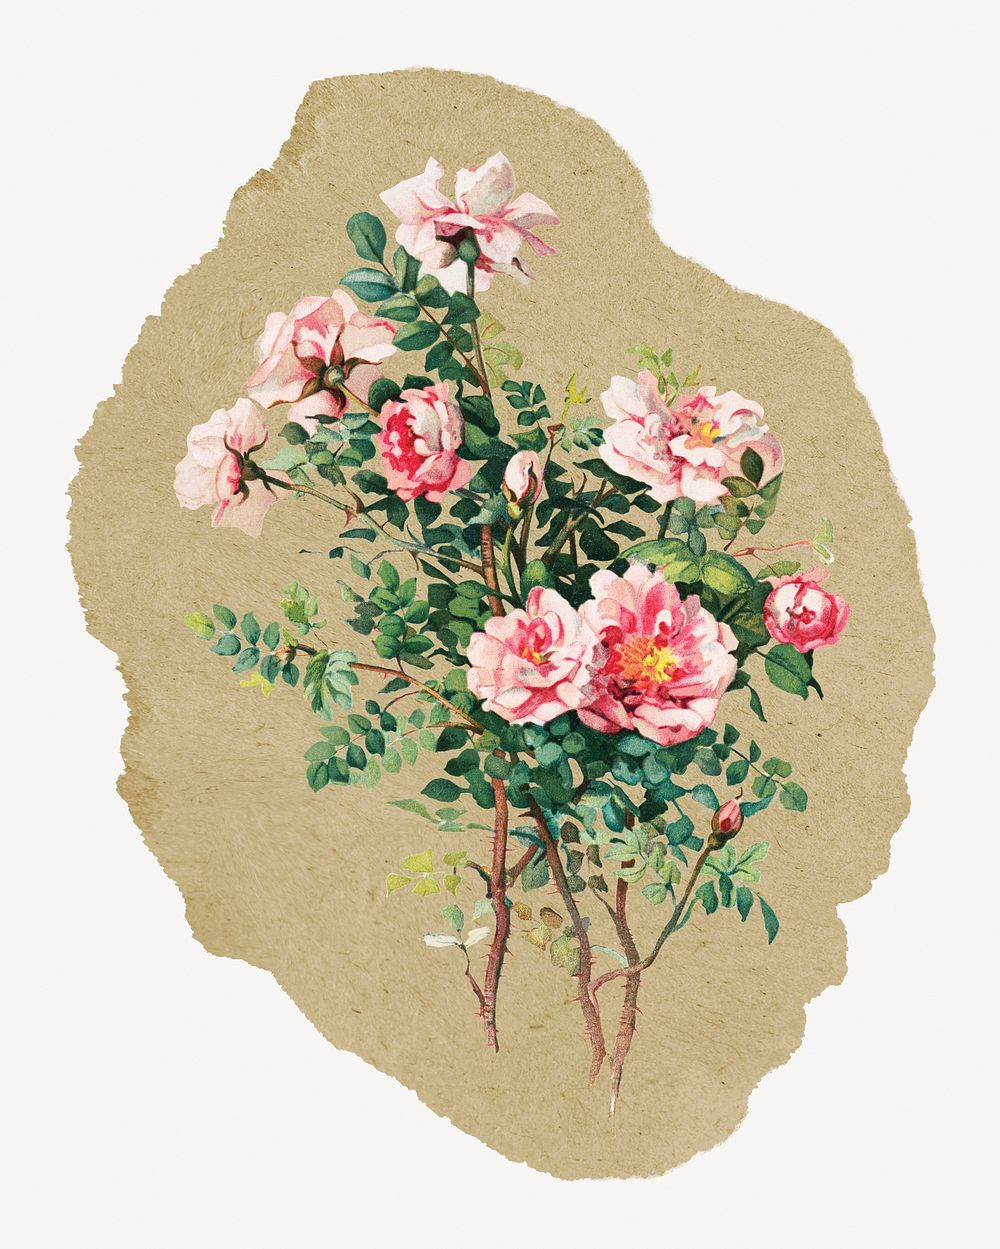 Rose illustration, vintage artwork, ripped paper badge